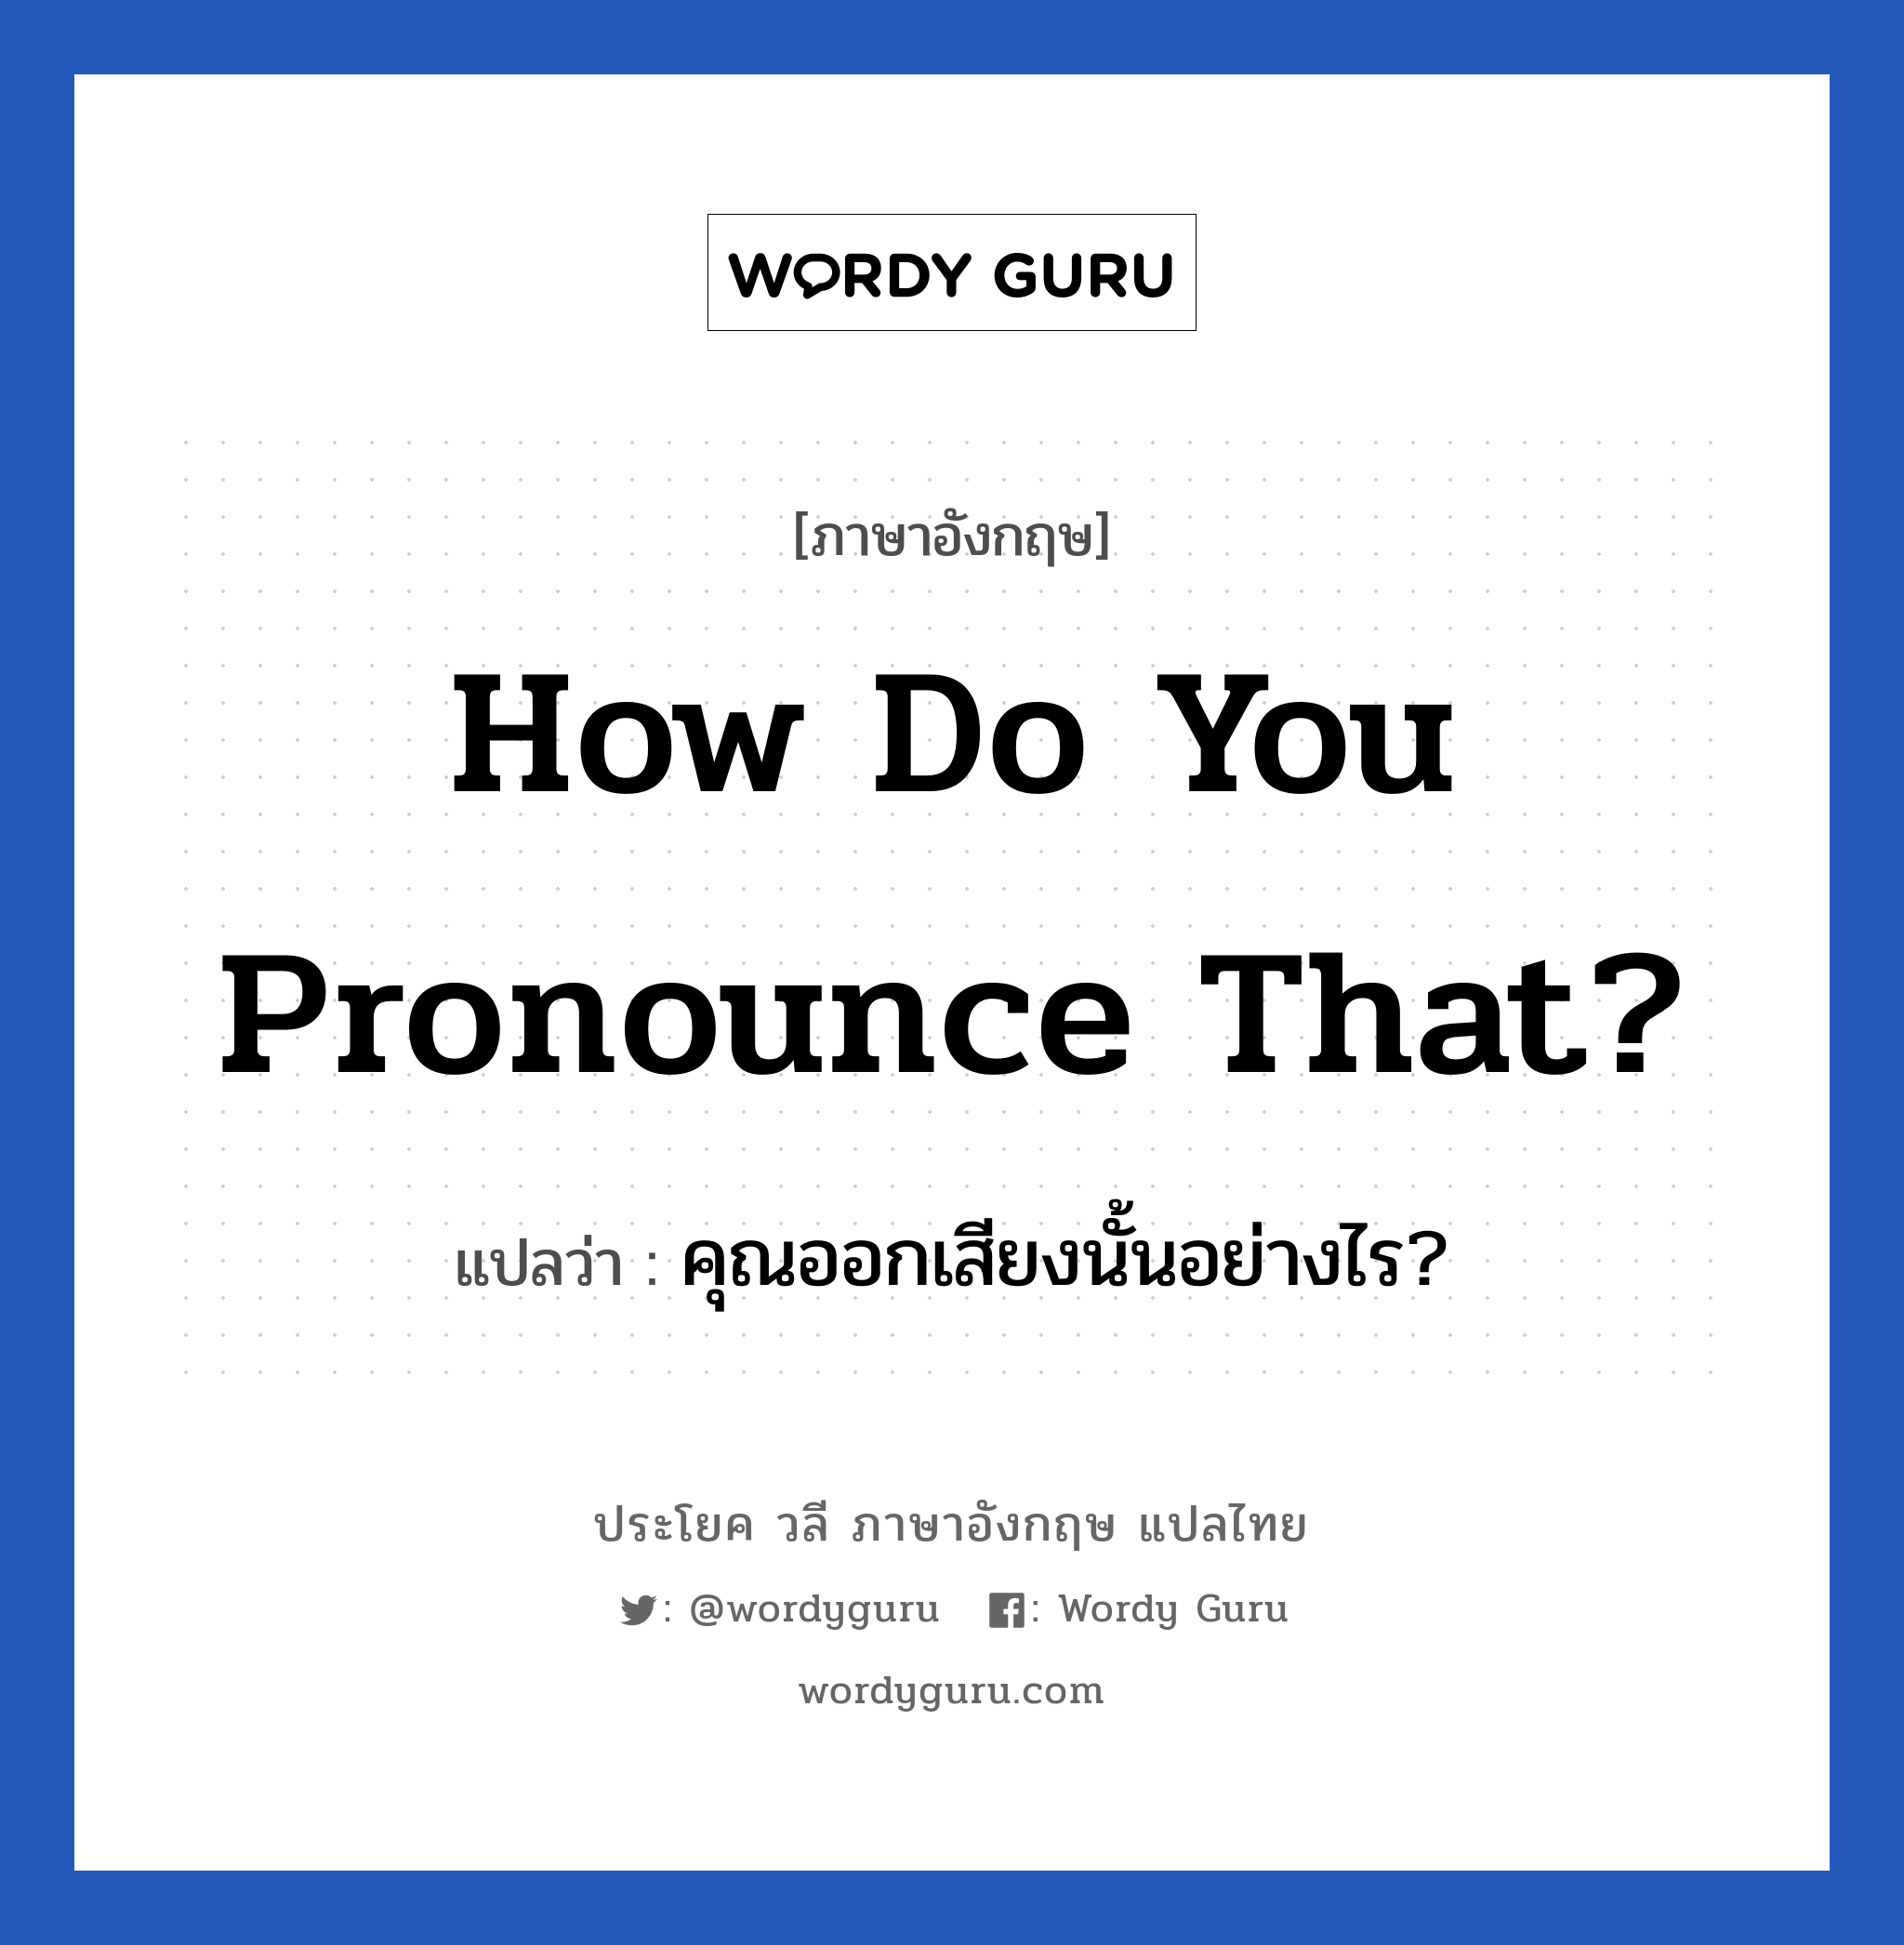 คุณออกเสียงนั้นอย่างไร? ภาษาอังกฤษ?, วลีภาษาอังกฤษ คุณออกเสียงนั้นอย่างไร? แปลว่า How do you pronounce that?